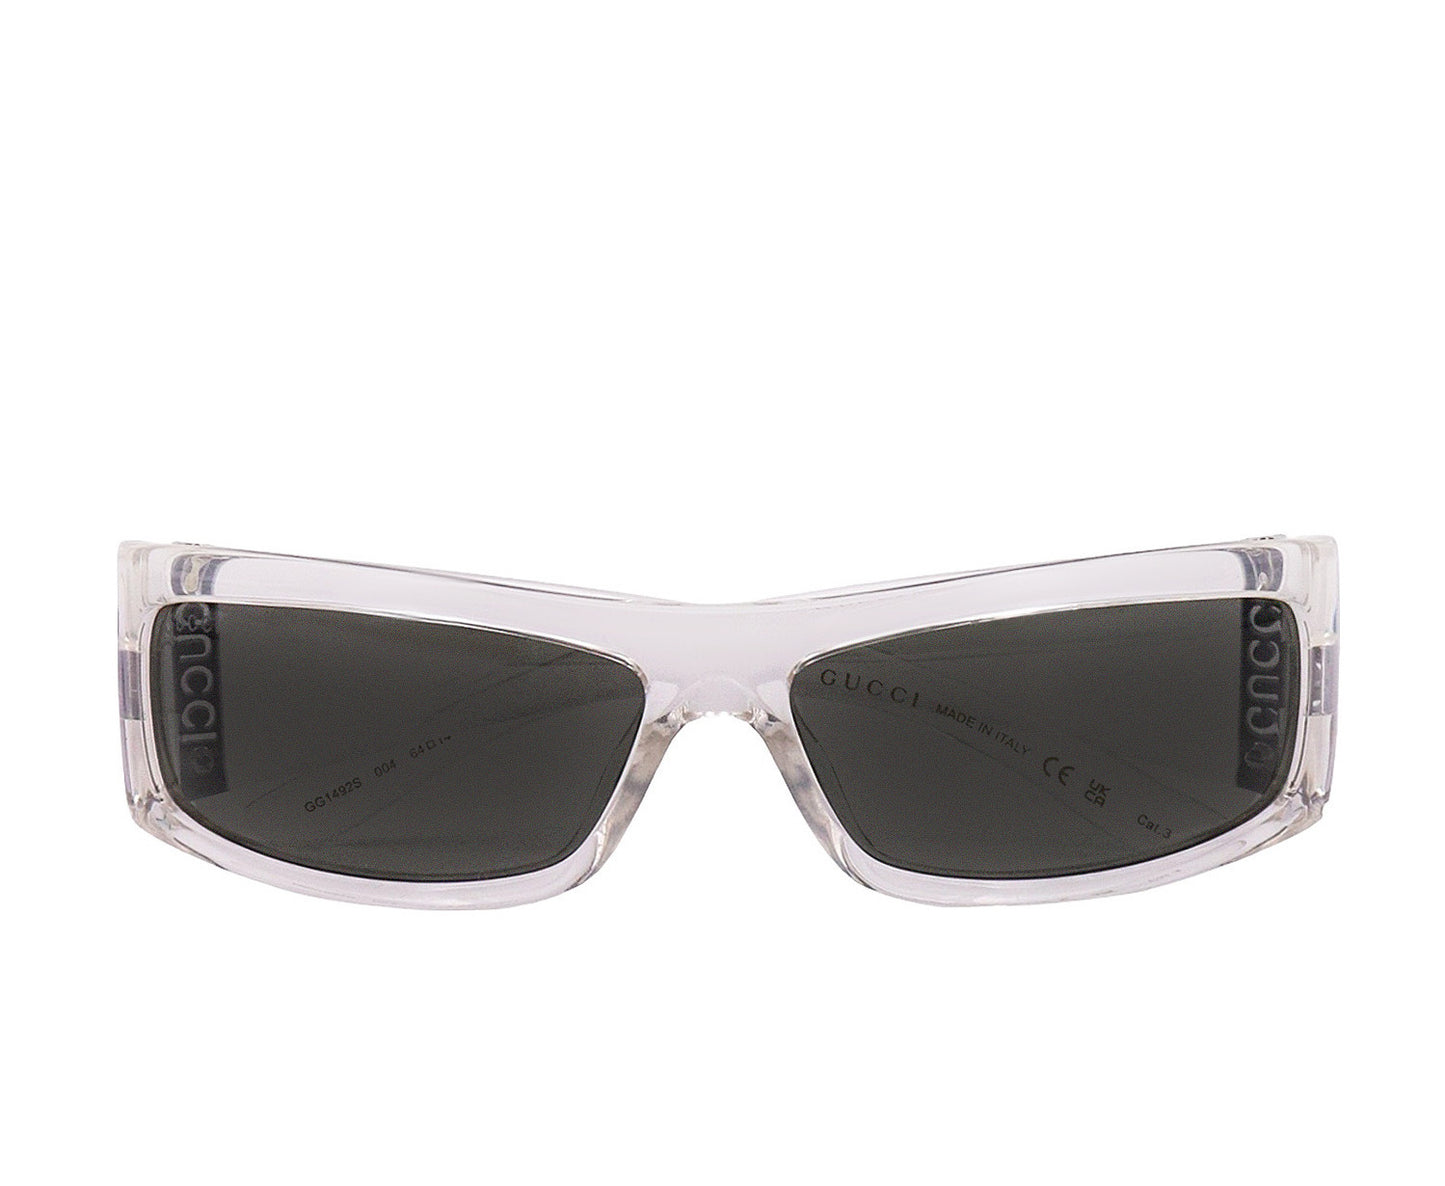 Gucci GG1492S-004 64mm New Sunglasses